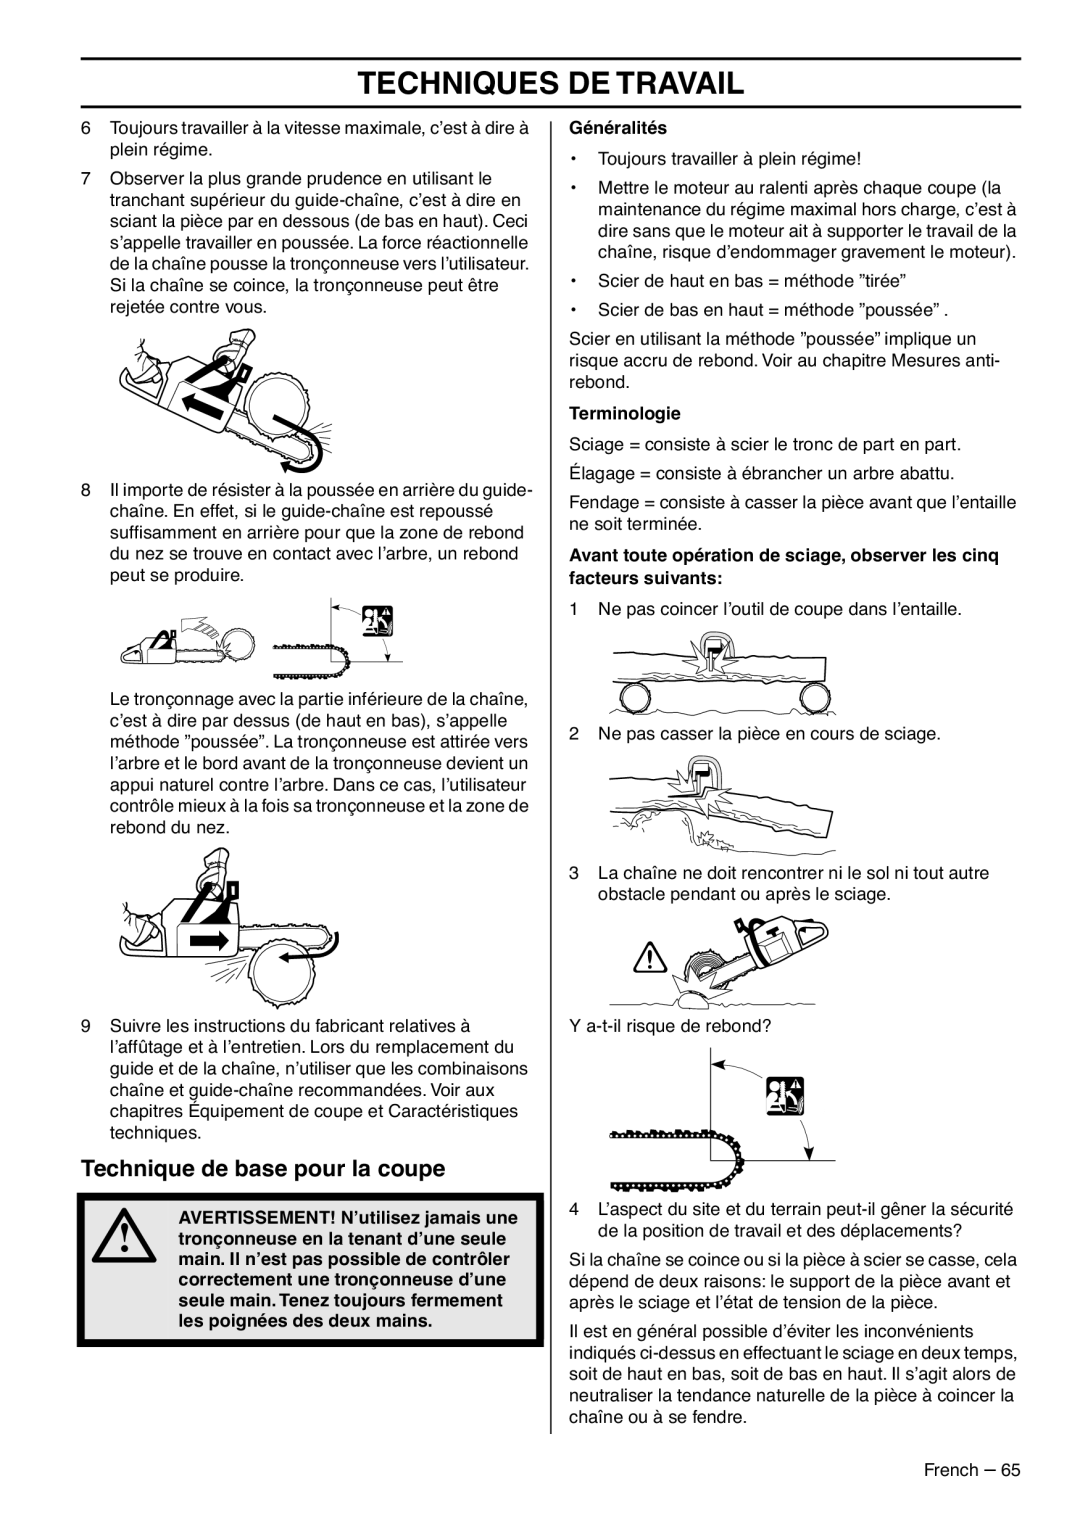 RedMax GZ7000 manual Technique de base pour la coupe, Techniques De Travail, Généralités, Terminologie 